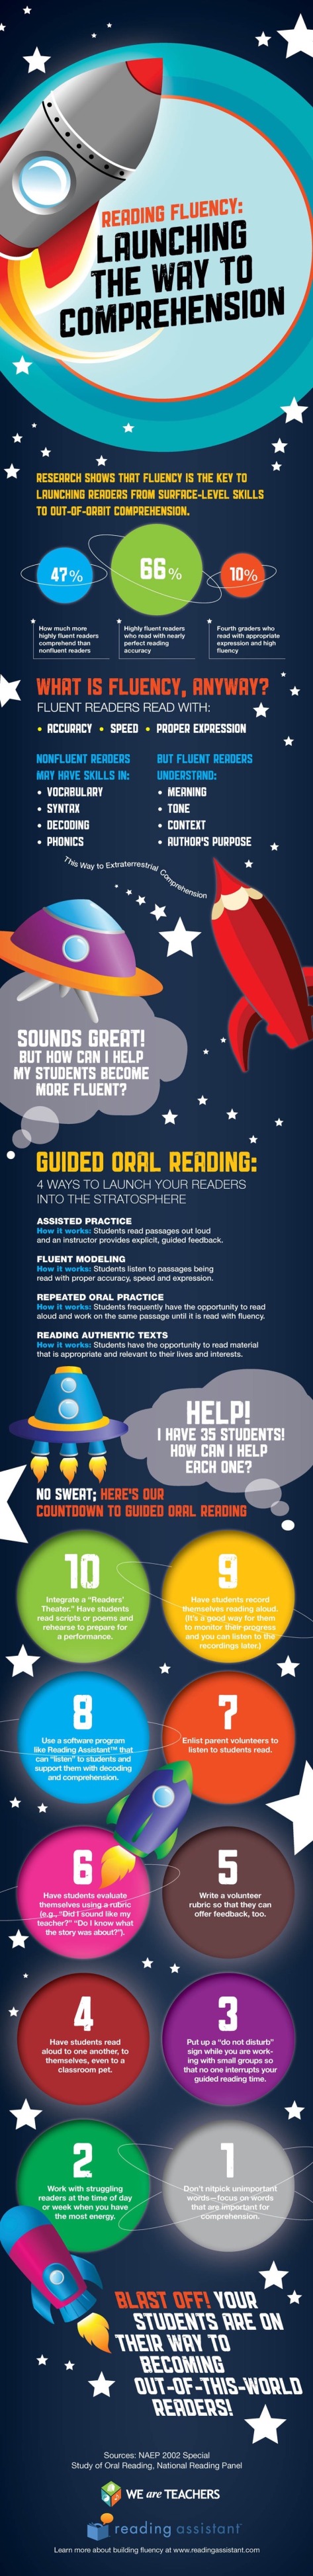 Tips-improving-reading-fluency-full-infographic